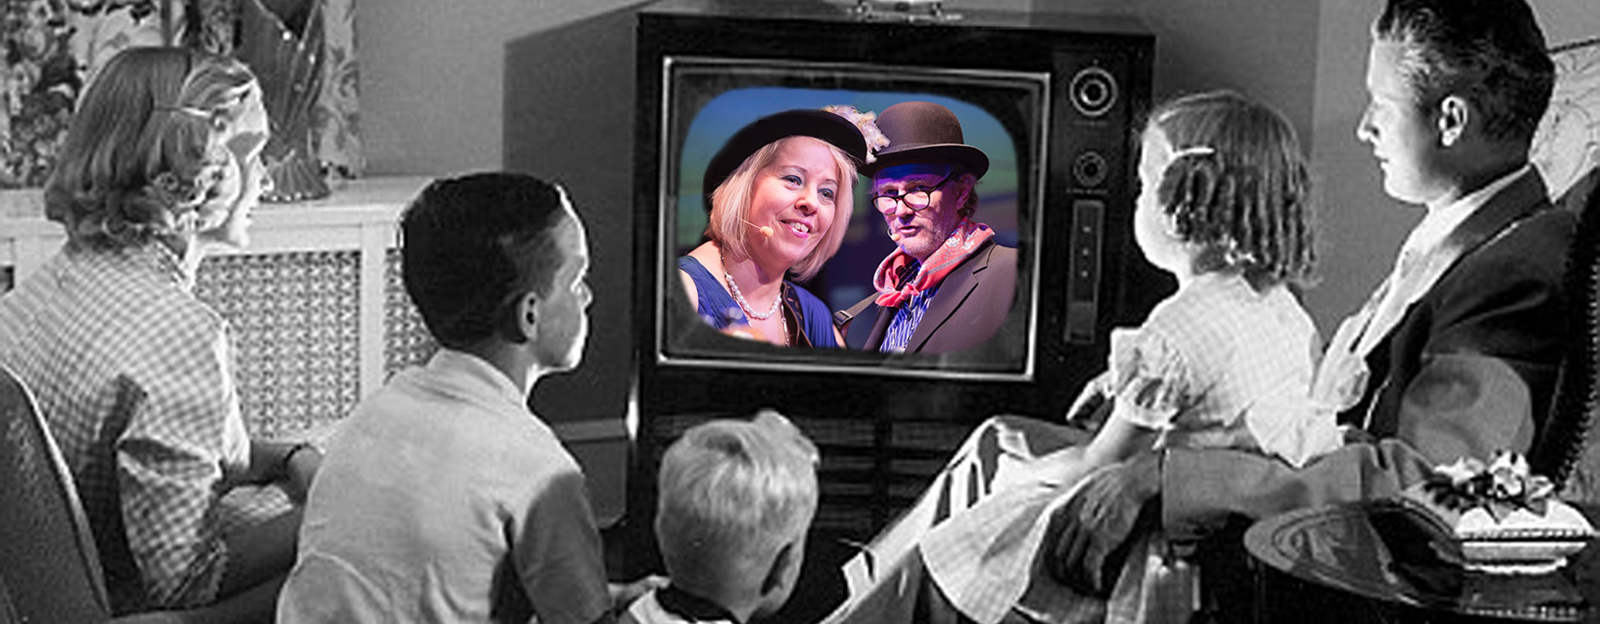 Svartvit bild från femtiotalet där en familj ser på teve. I teverutan syns färgbild på  Ingmari Dalin och Harald Treutiger.